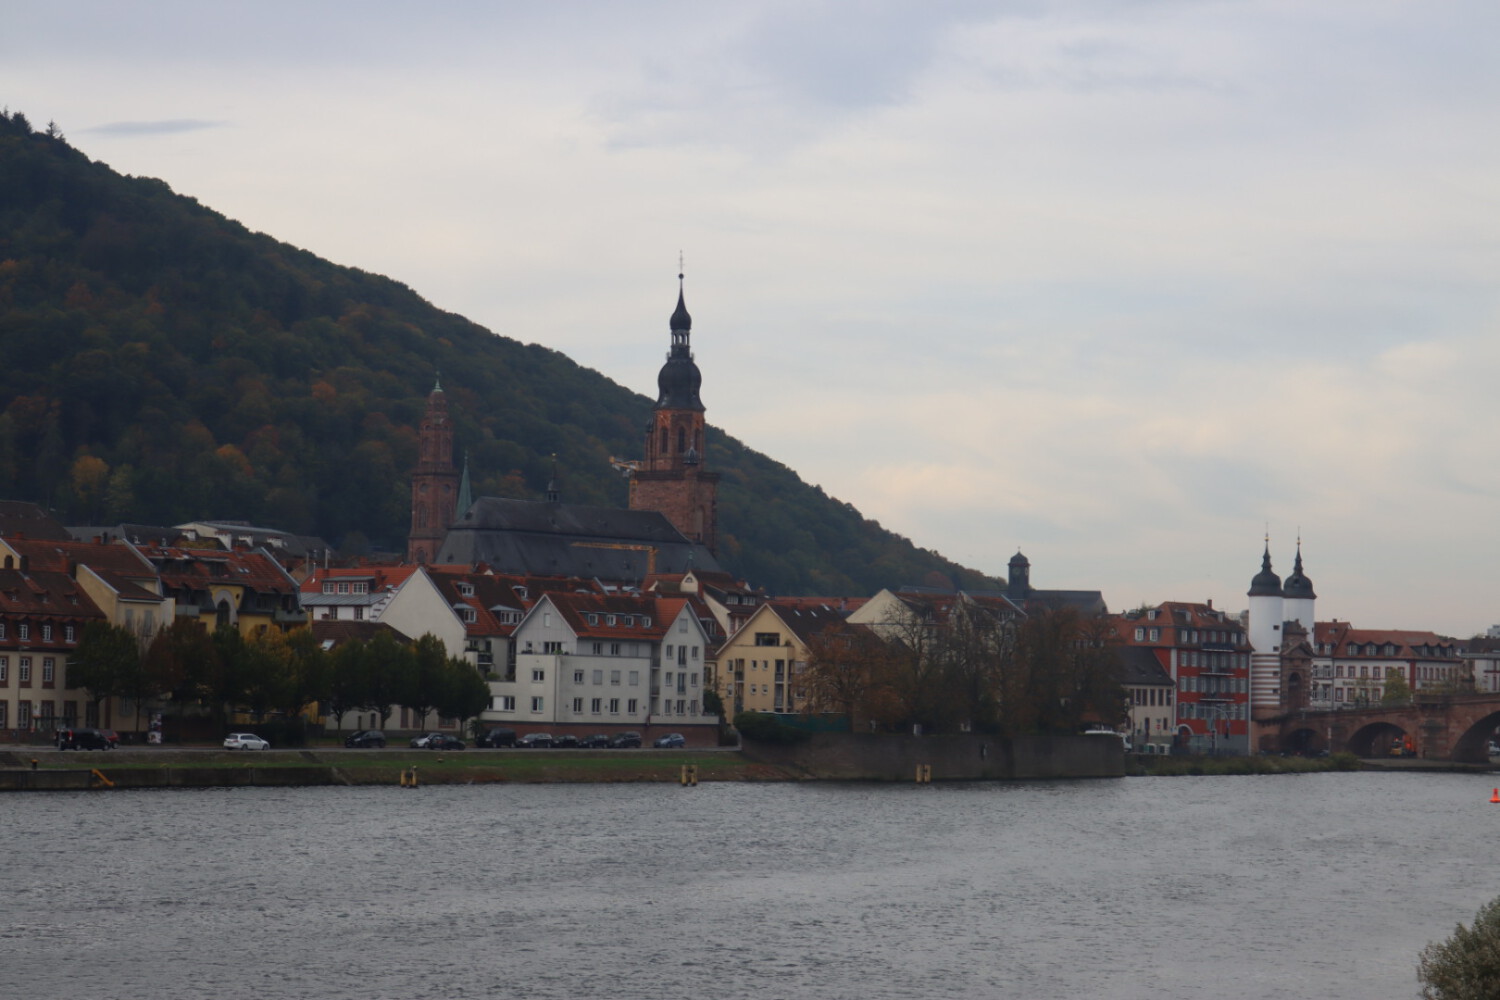 Old Town of Heidelberg